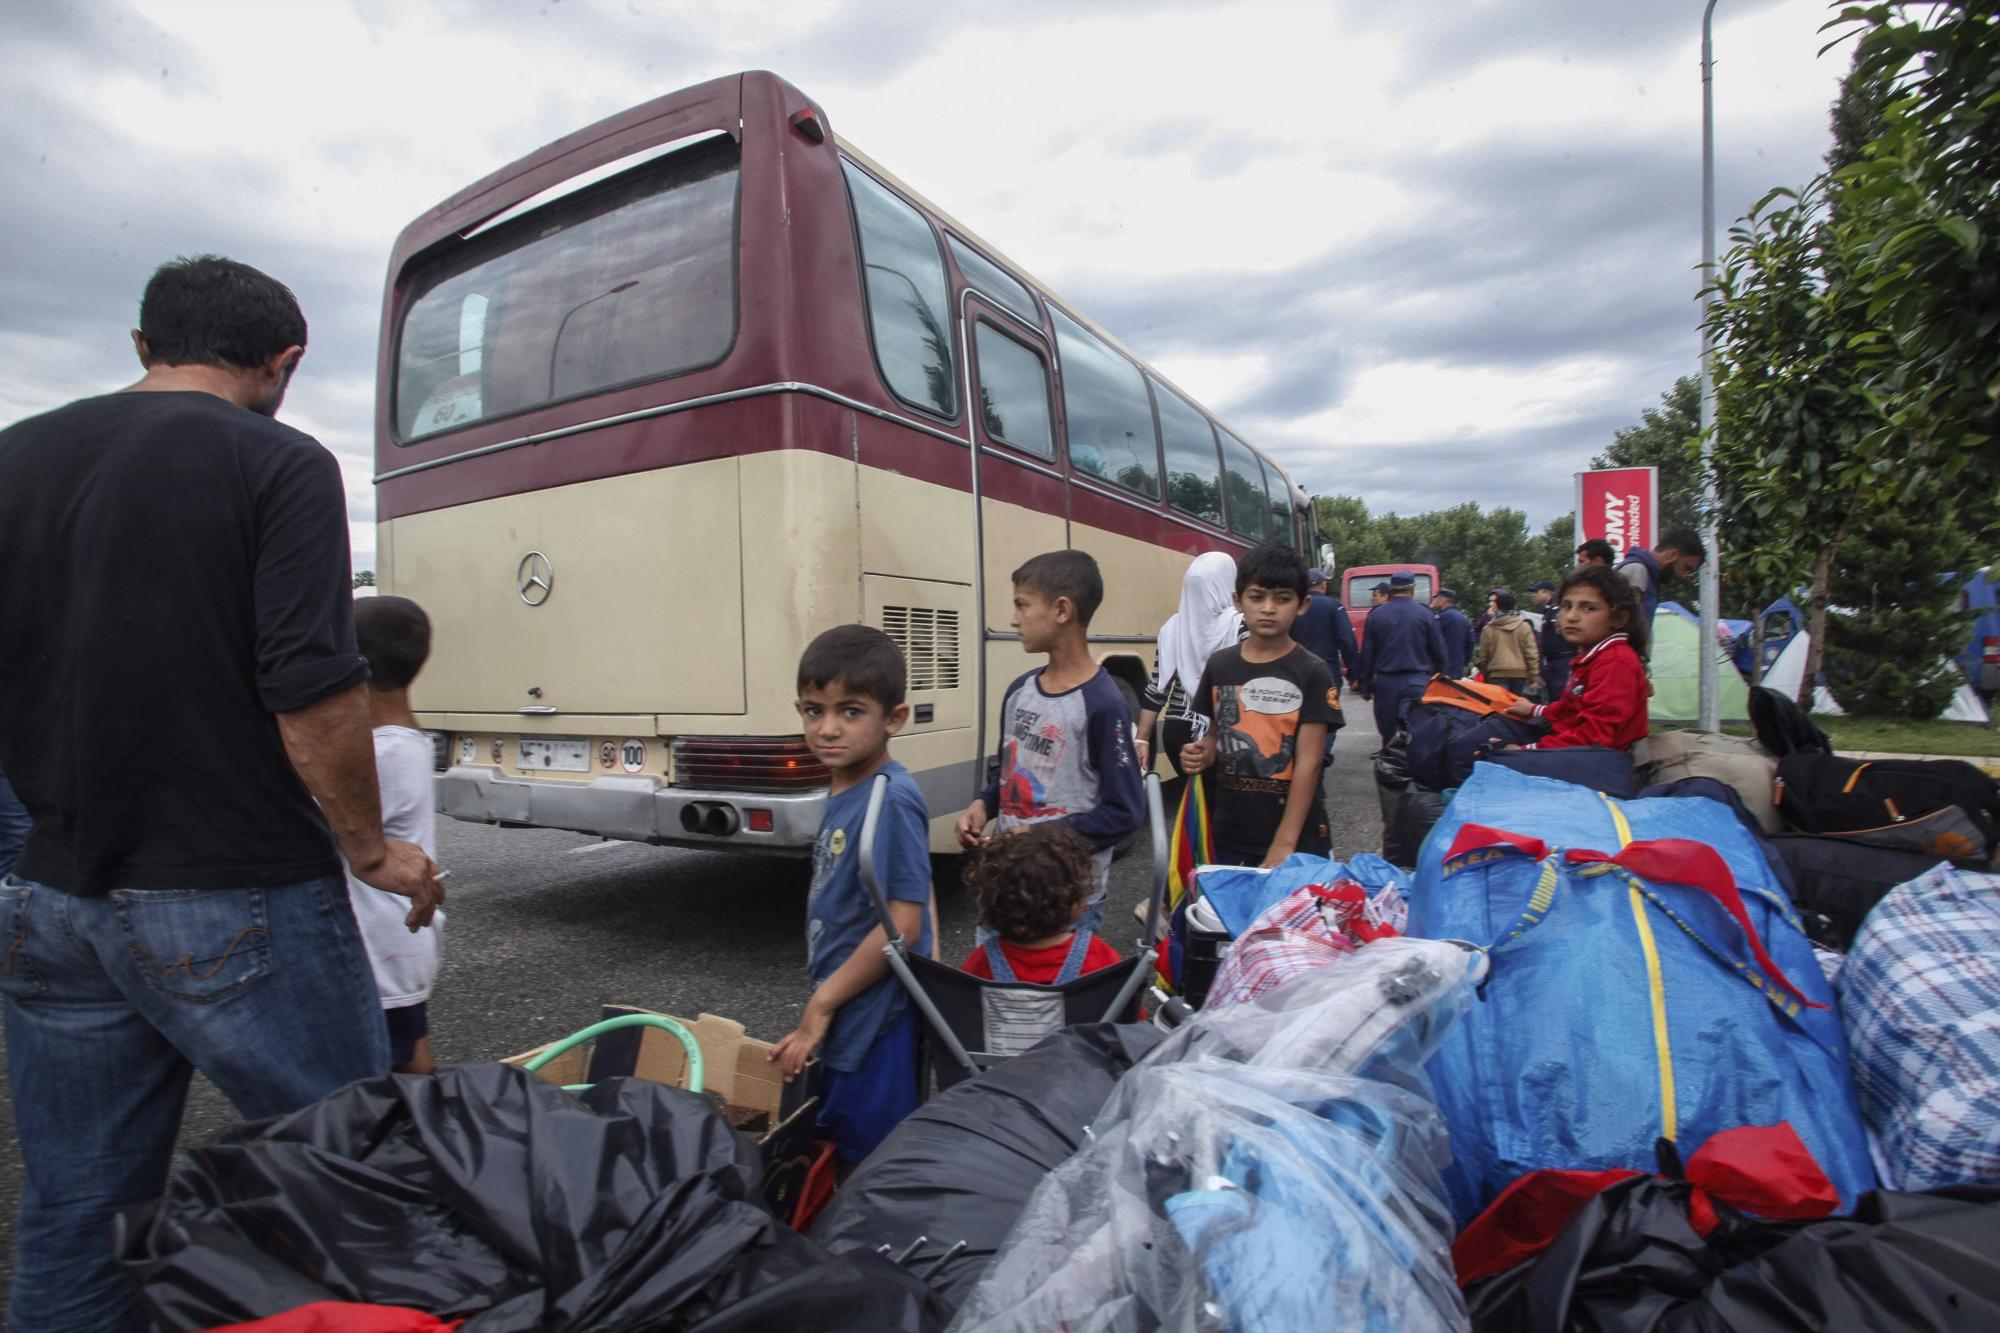 Refugiados e inmigrantes esperan junto a un autobús mientras la policía continúa con el desalojo del campo de refugiados improvisado de la localidad de Polykastro, próxima a Idomeni (Grecia) hoy 13 de junio de 2016. 